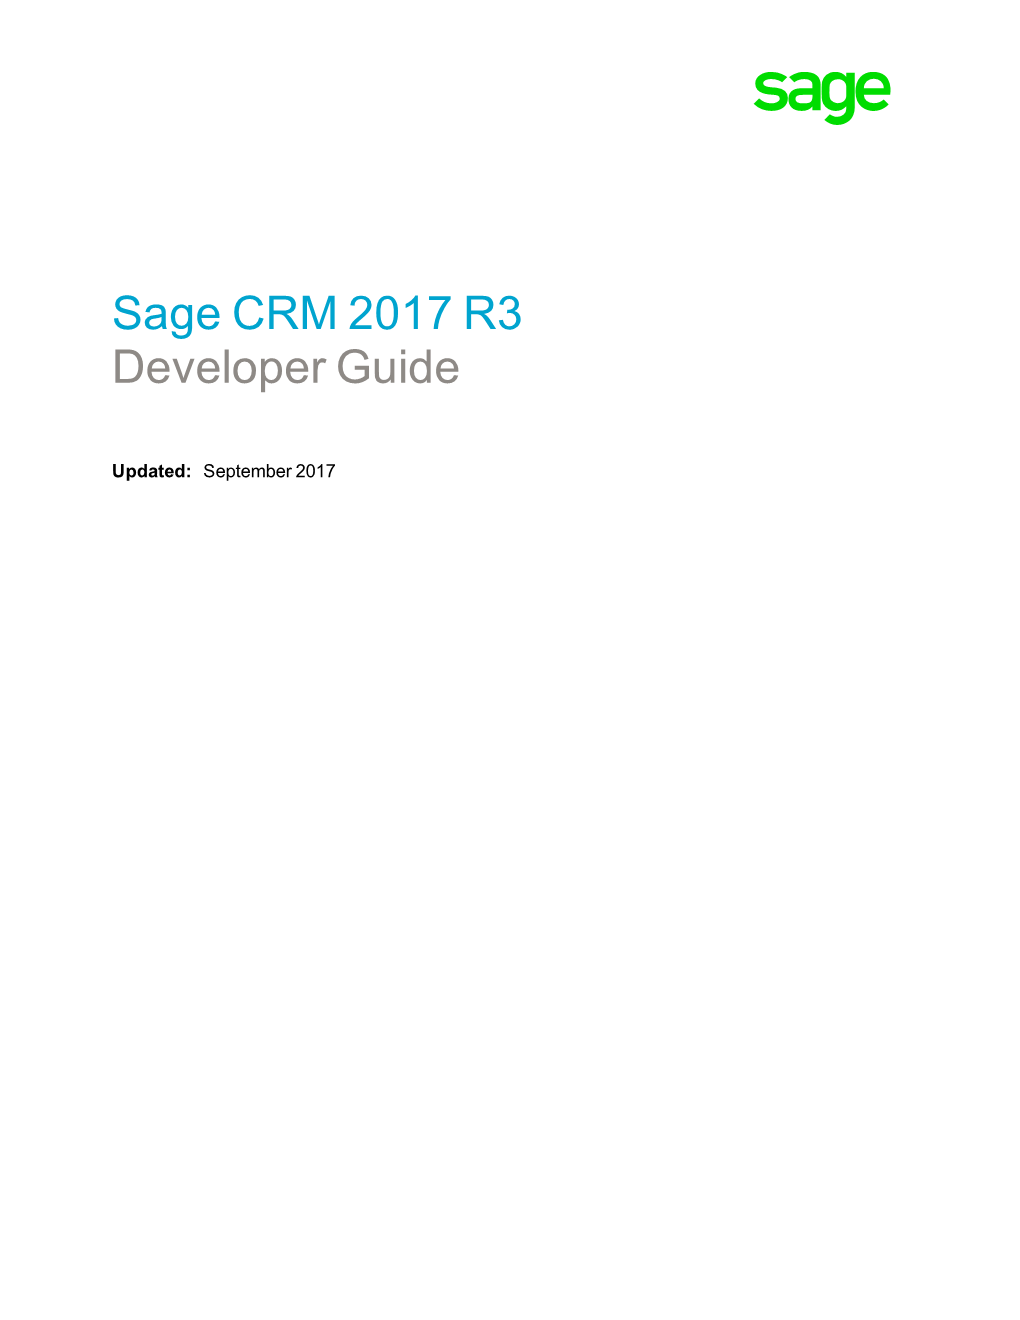 Sage CRM 2017 R3 Developer Guide